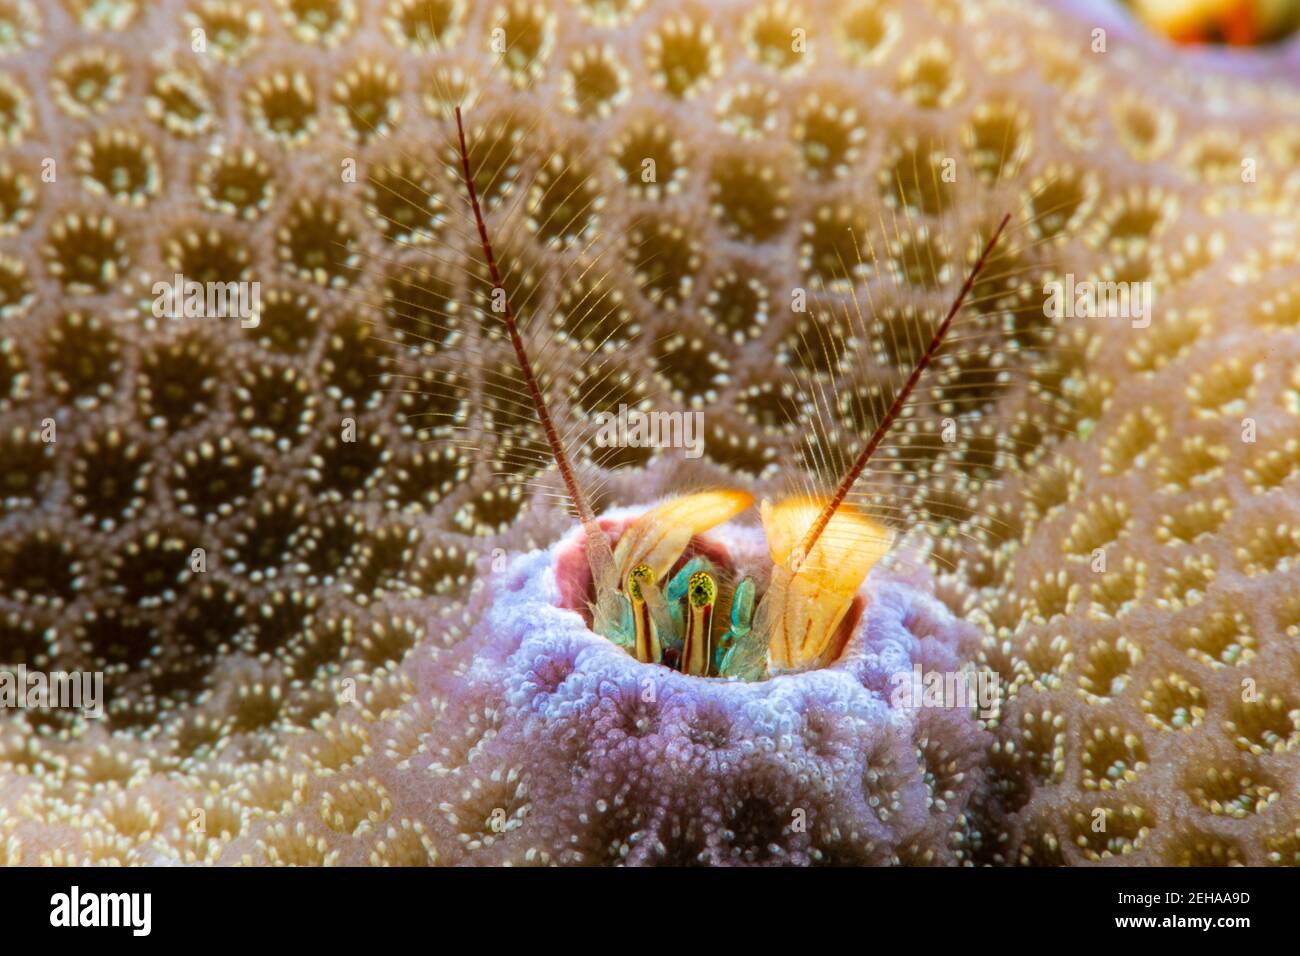 Esta especie de cangrejo ermitaño de coral, Paguritta vittata, vive en un agujero en el coral duro y trampas que pasan plancton en su antenae de plumas, Yap, federado Foto de stock